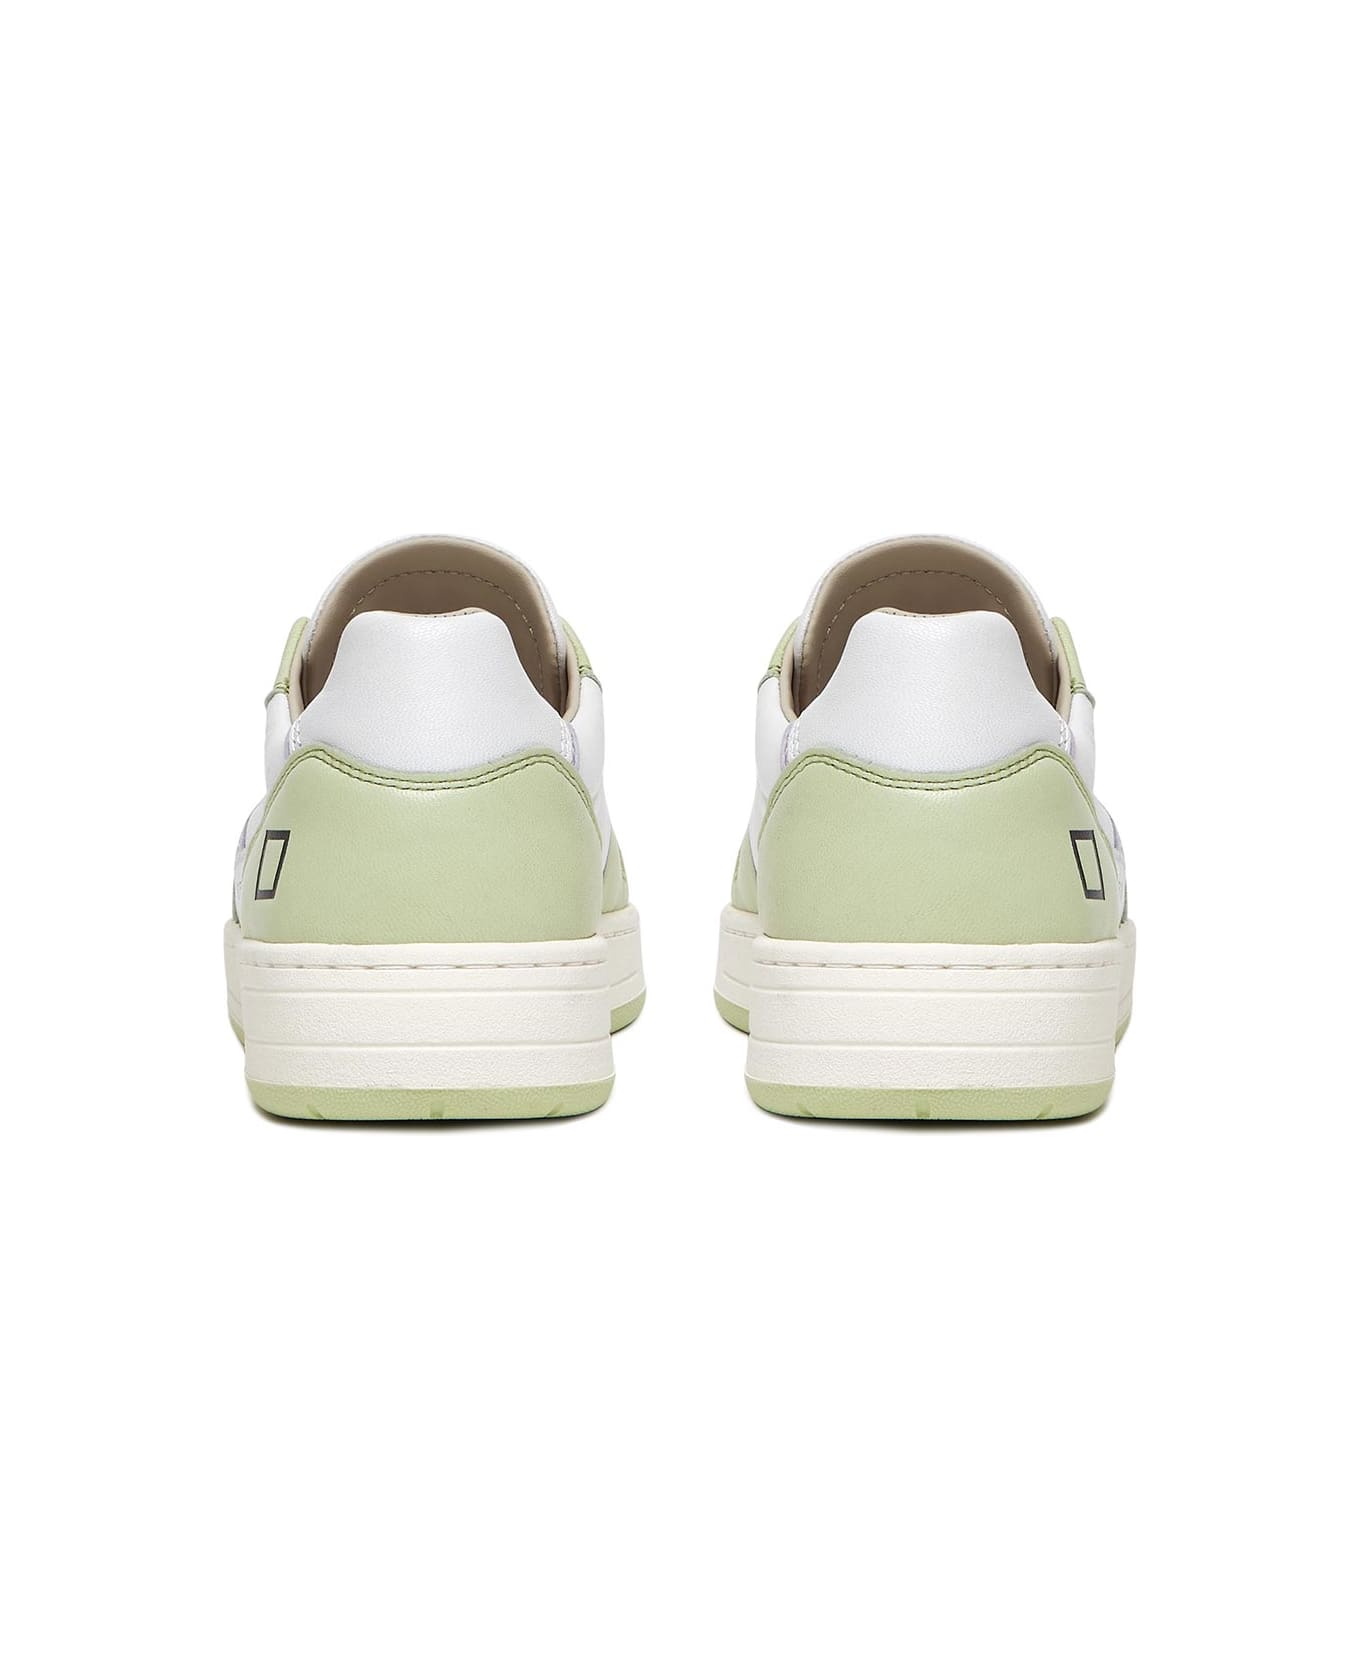 D.A.T.E. Court 2.0 Soft Mint Sneaker - WHITE MINT